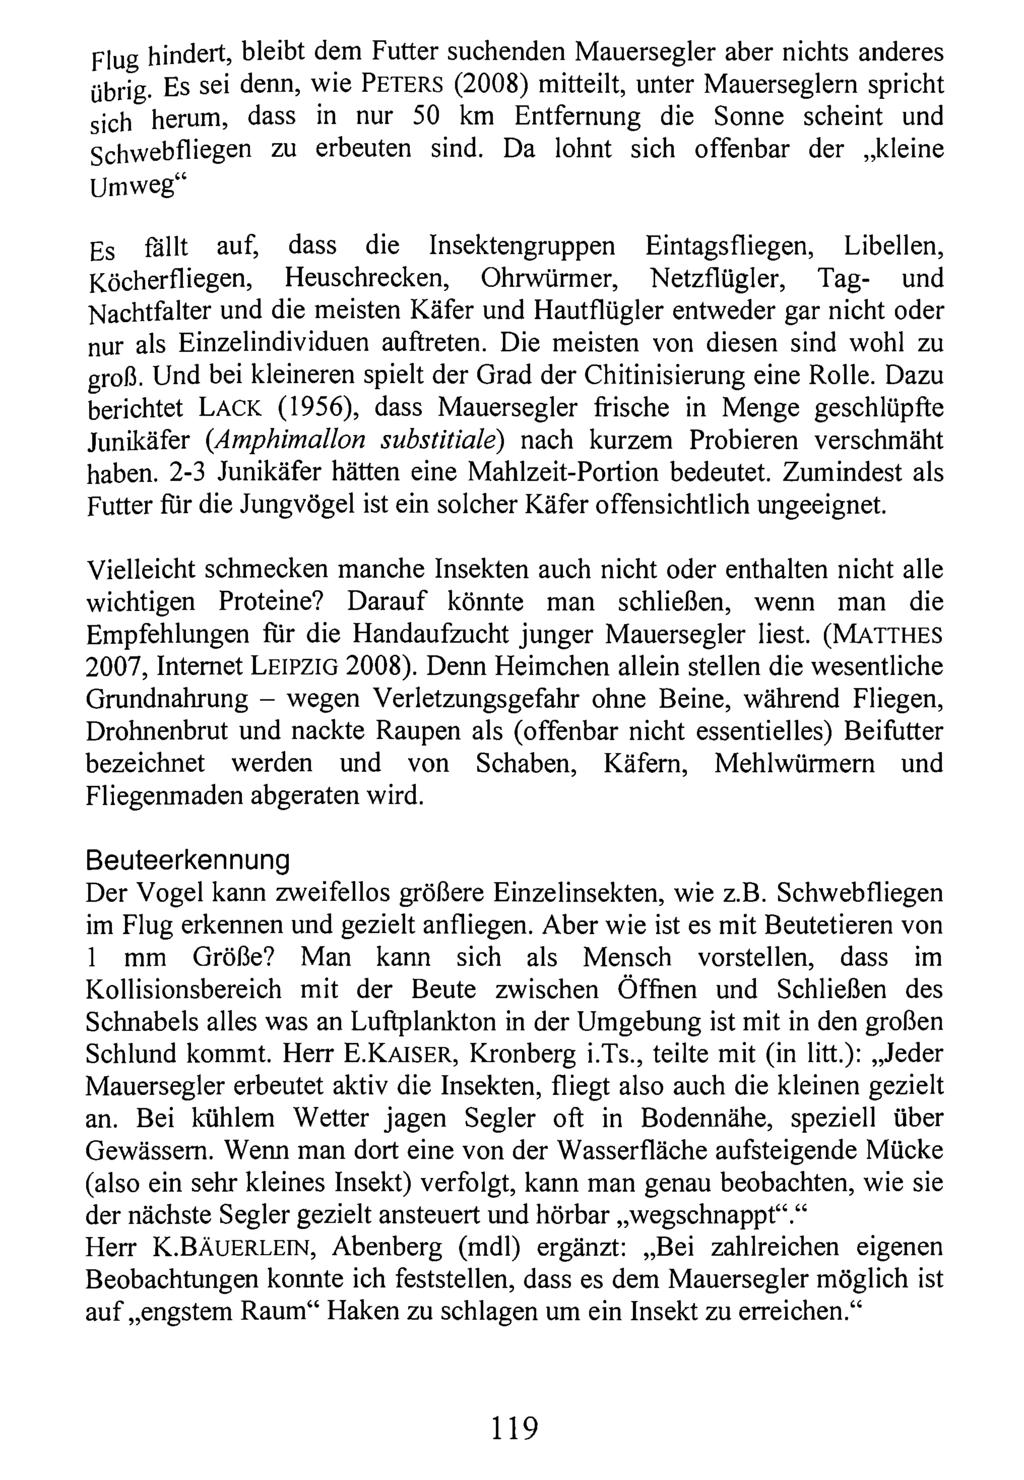 Flug hindert, bleibt Kreis Nürnberger dem Futter Entomologen; suchenden download unter M www.biologiezentrum.at auersegler aber nichts anderes übrig.